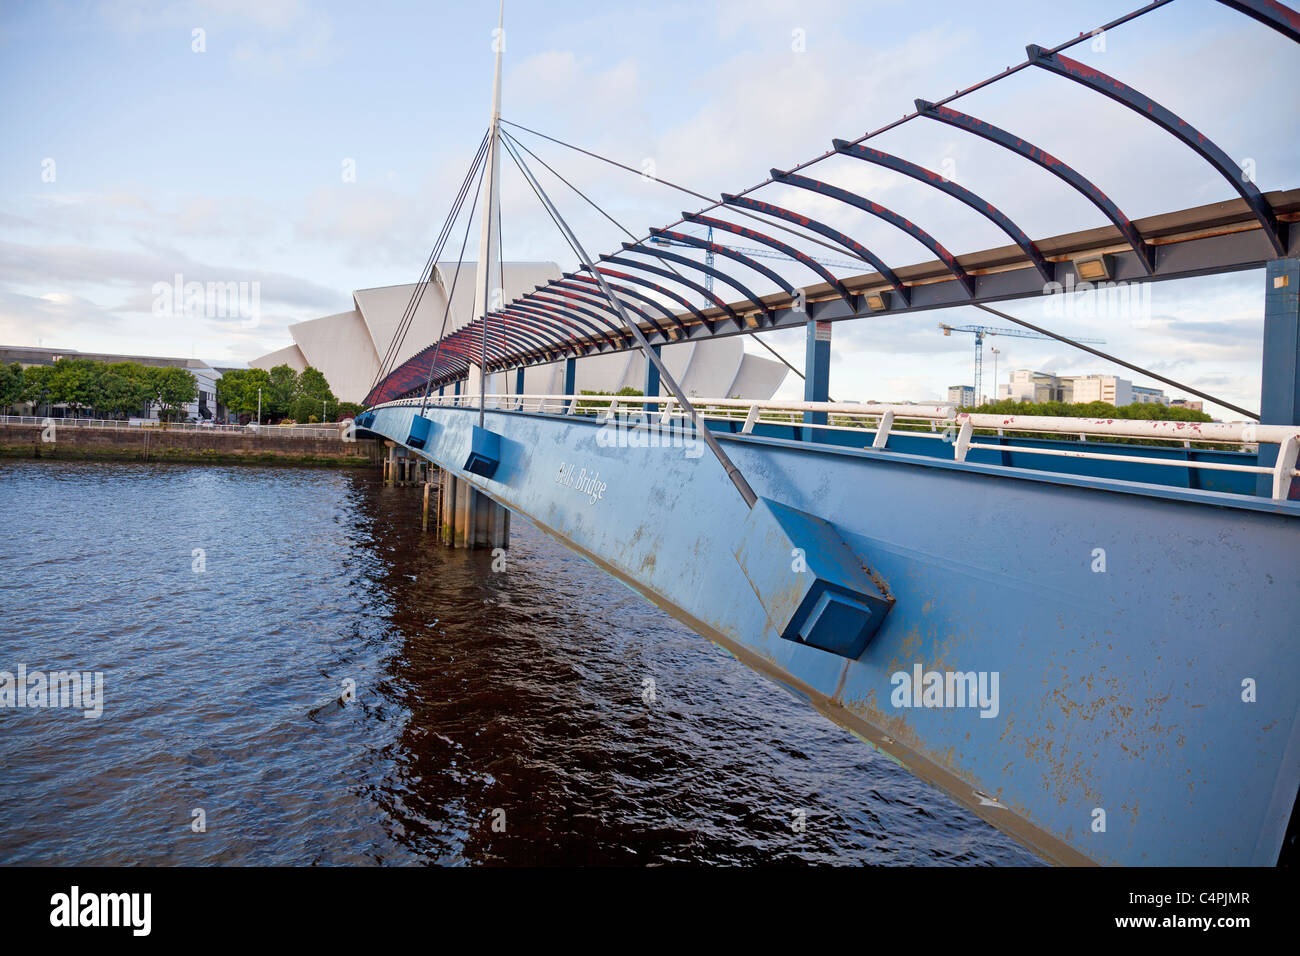 Pont de cloches, une suspension passerelle sur la rivière Clyde entre Finnieston Quay et du Pacifique à Glasgow, à Clyde Auditorium. Banque D'Images